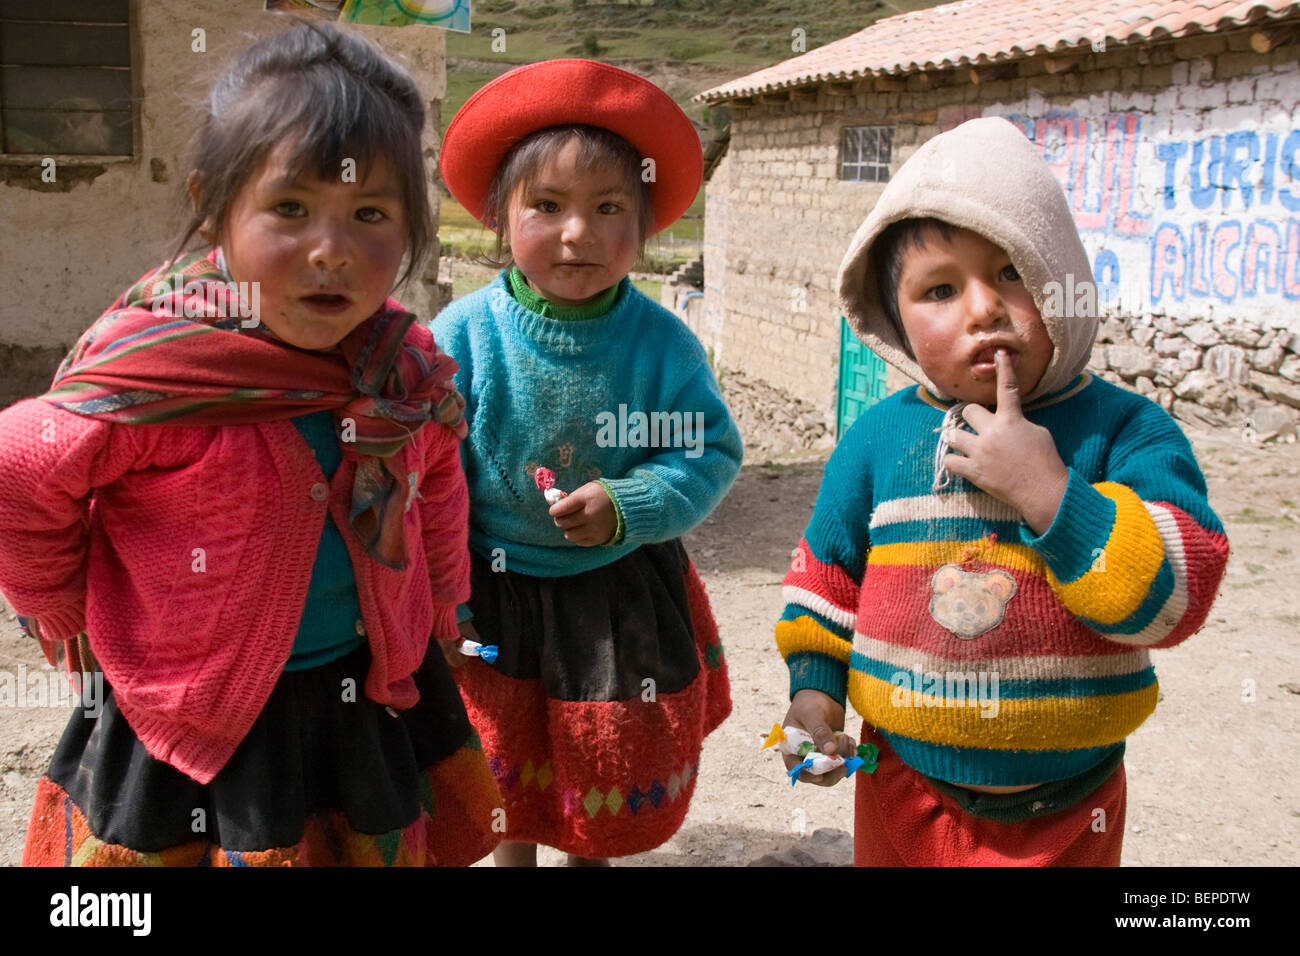 small village in Peru Stock Photo 